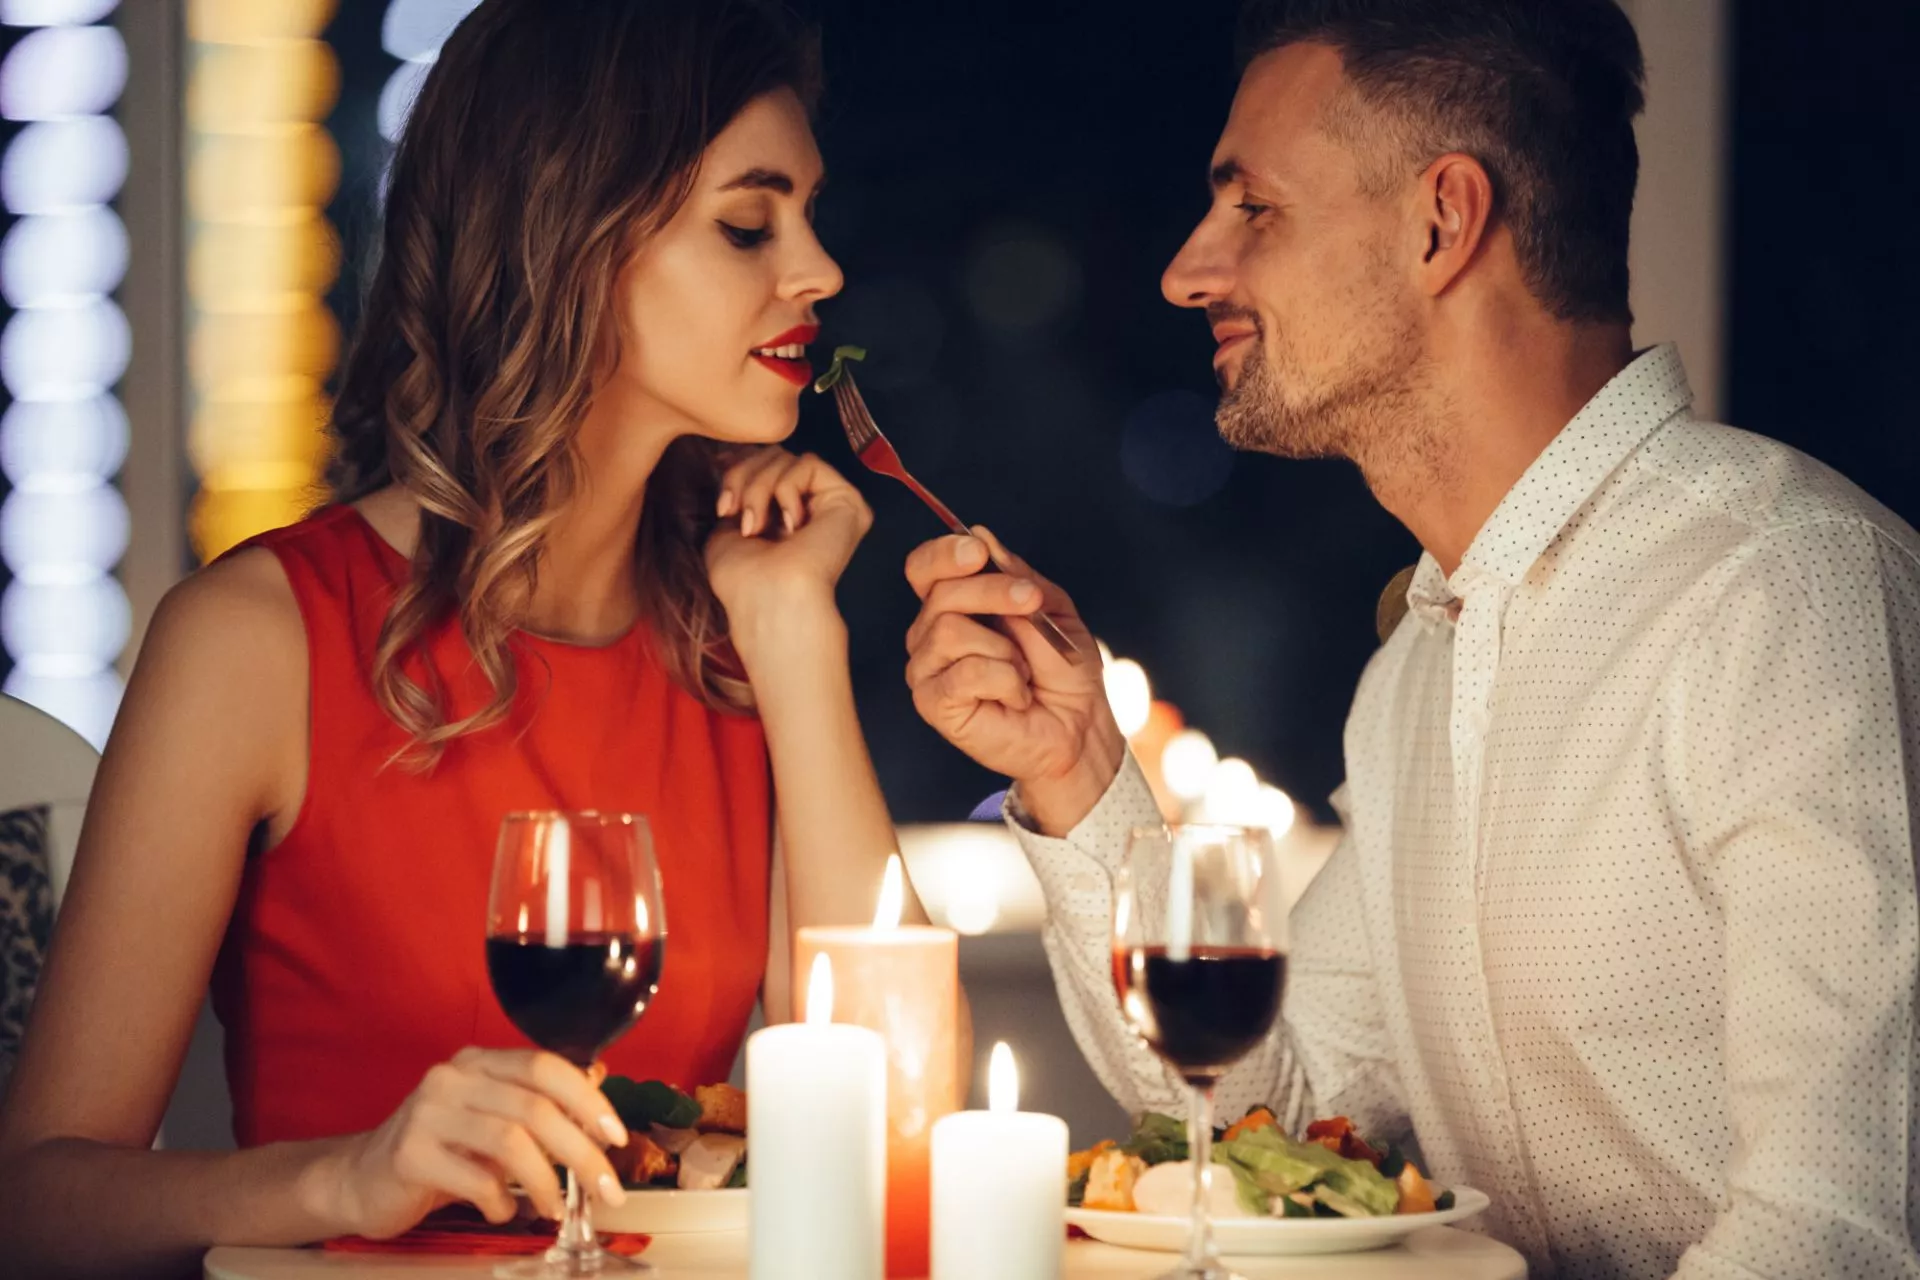 31 pomysłów na romantyczną kolację, które wprowadzą odpowiedni nastrój